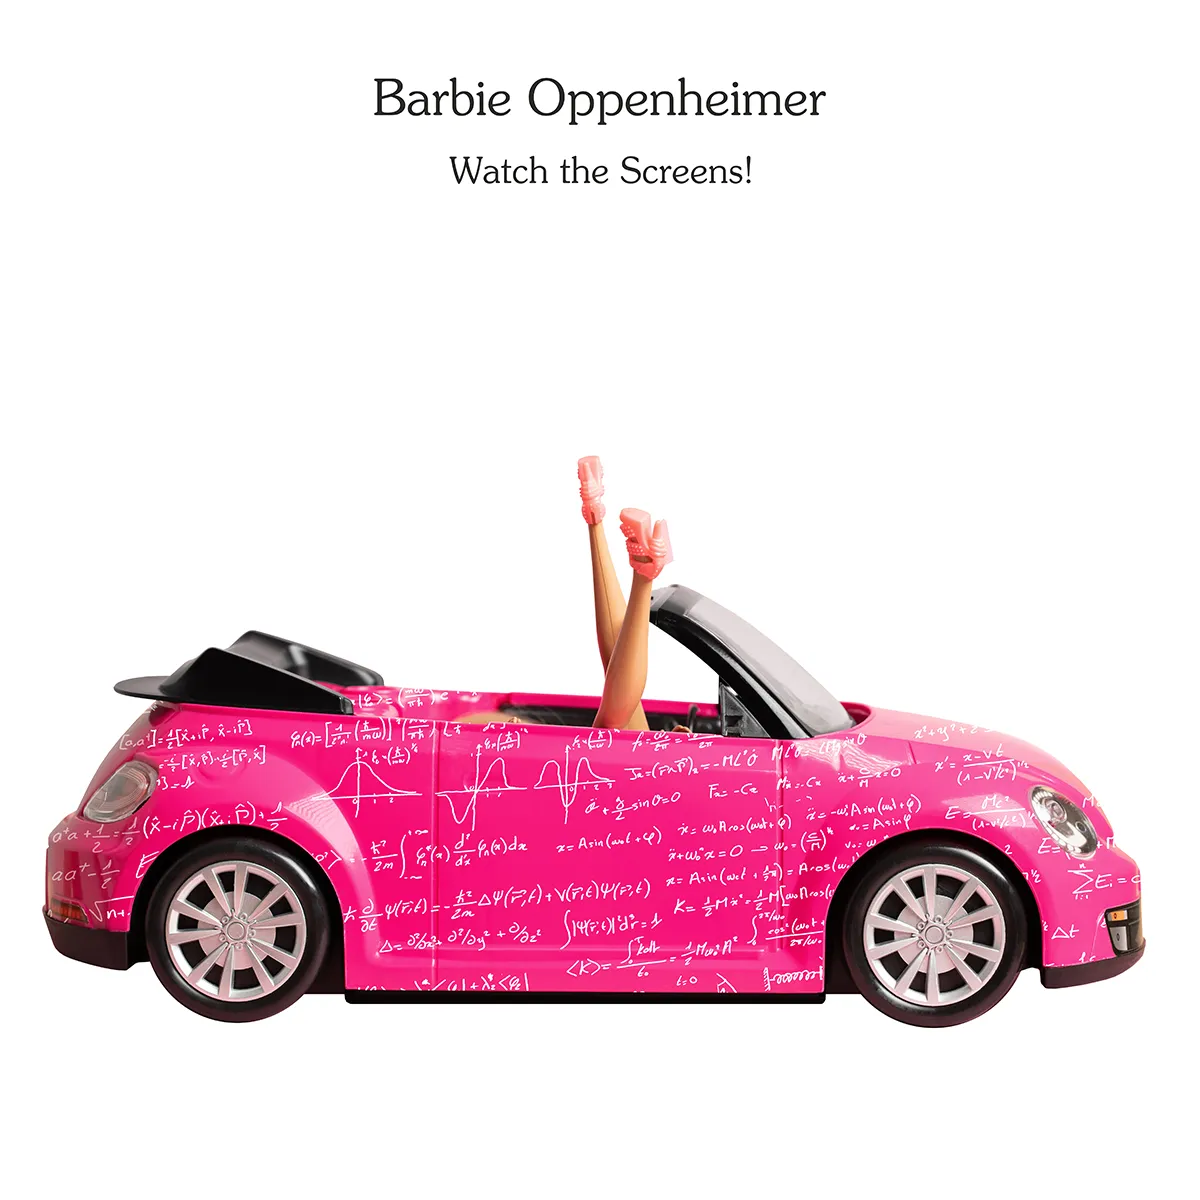 Print from contemporary artist Vladimir Tsesler - Barbie Oppenheimer. For sale.